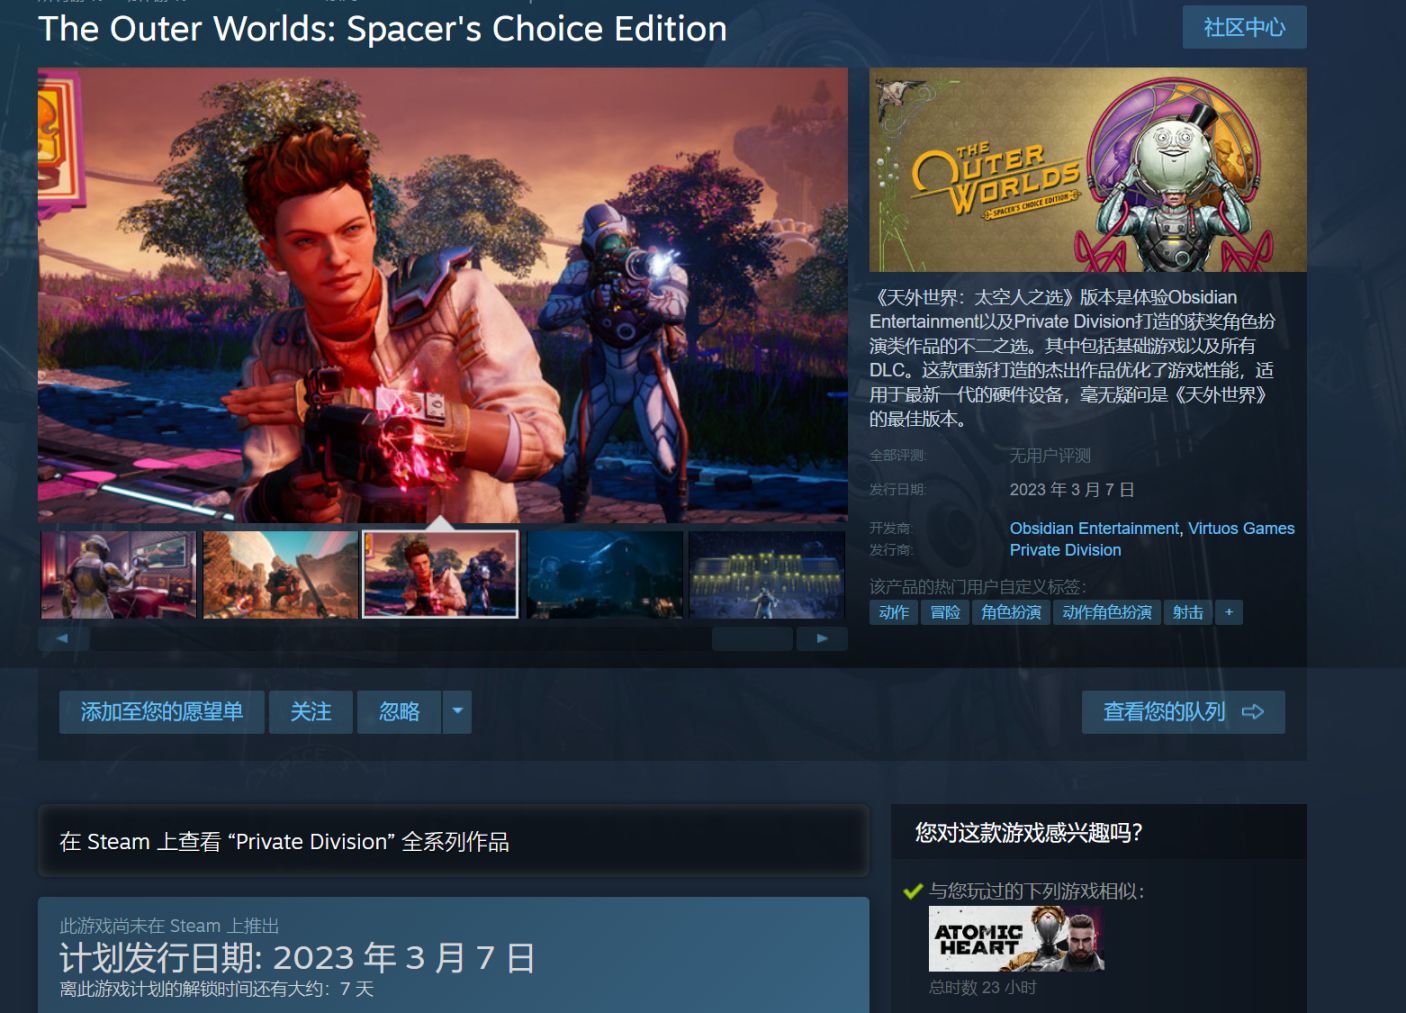 《天外世界:太空人之选》Steam页面上线 将于2023年3月7日发售-第0张